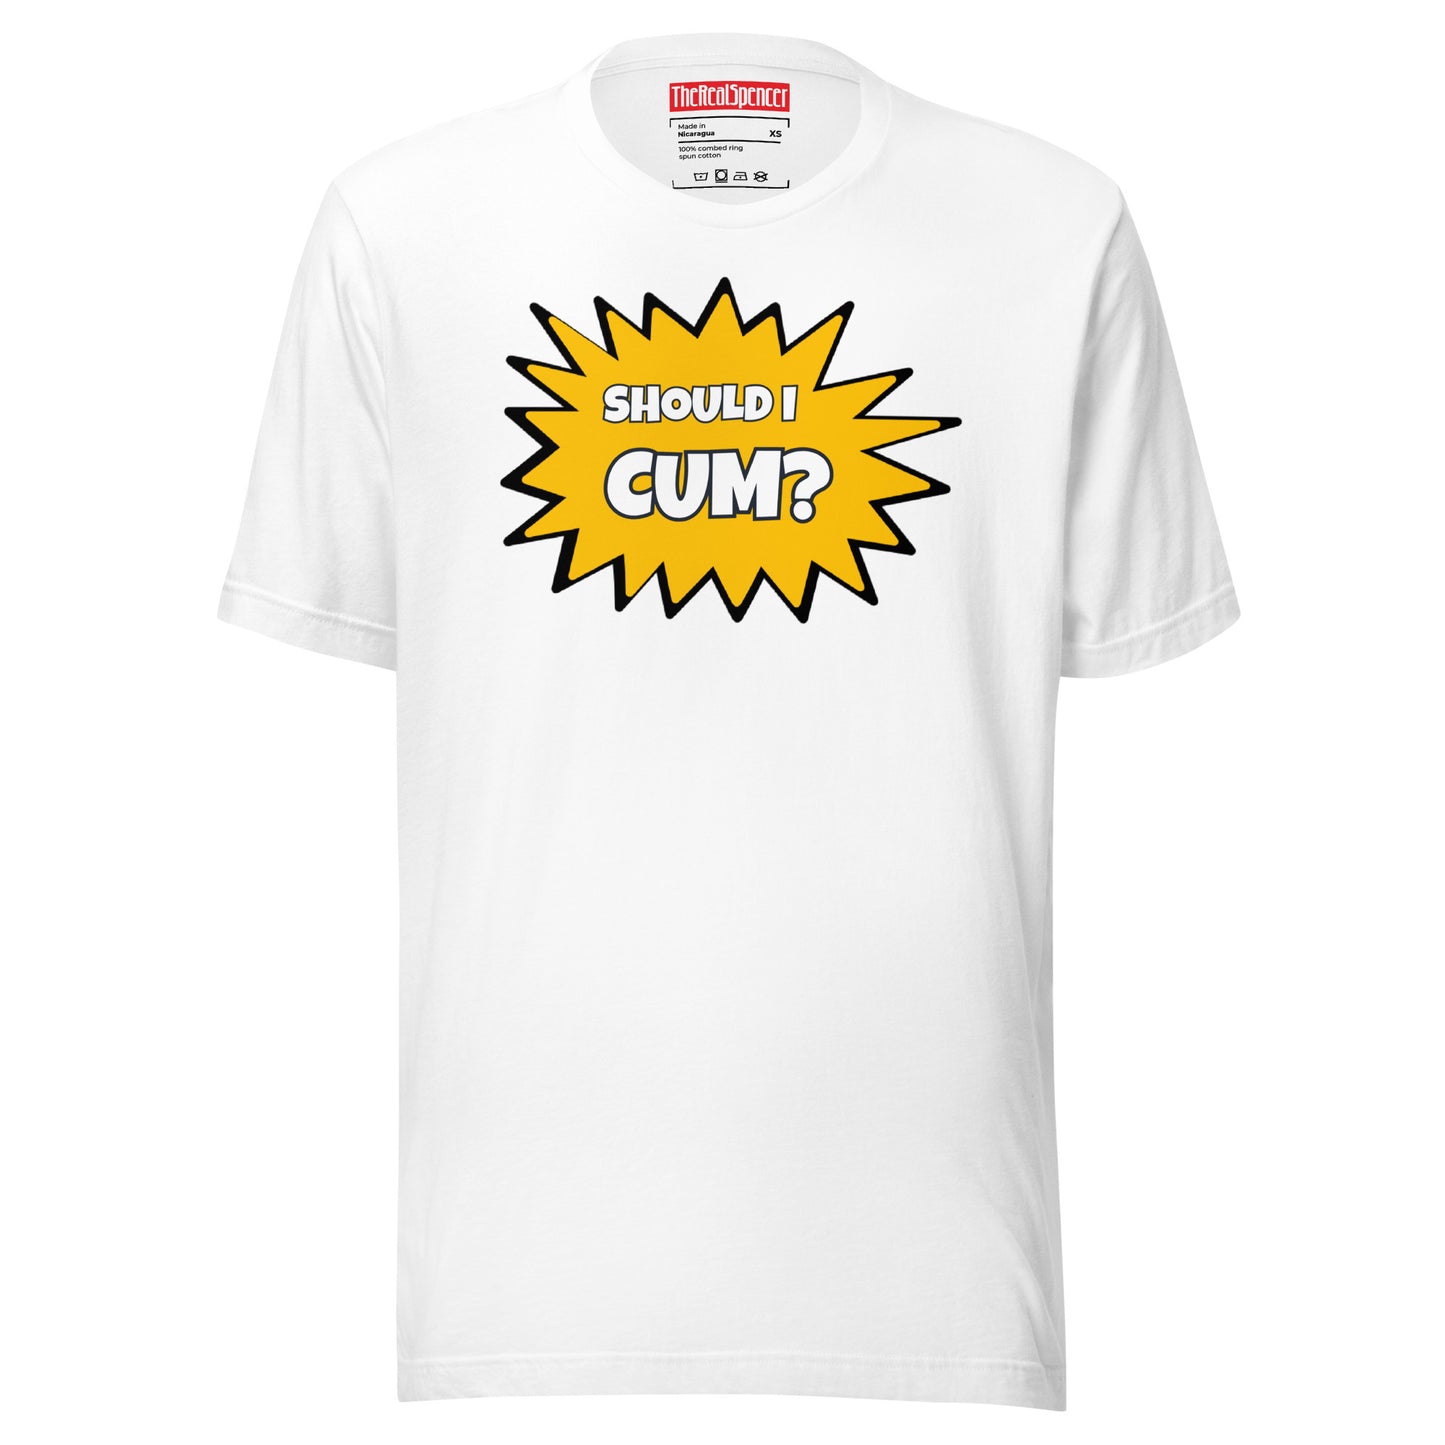 Should I Cum? T-Shirt